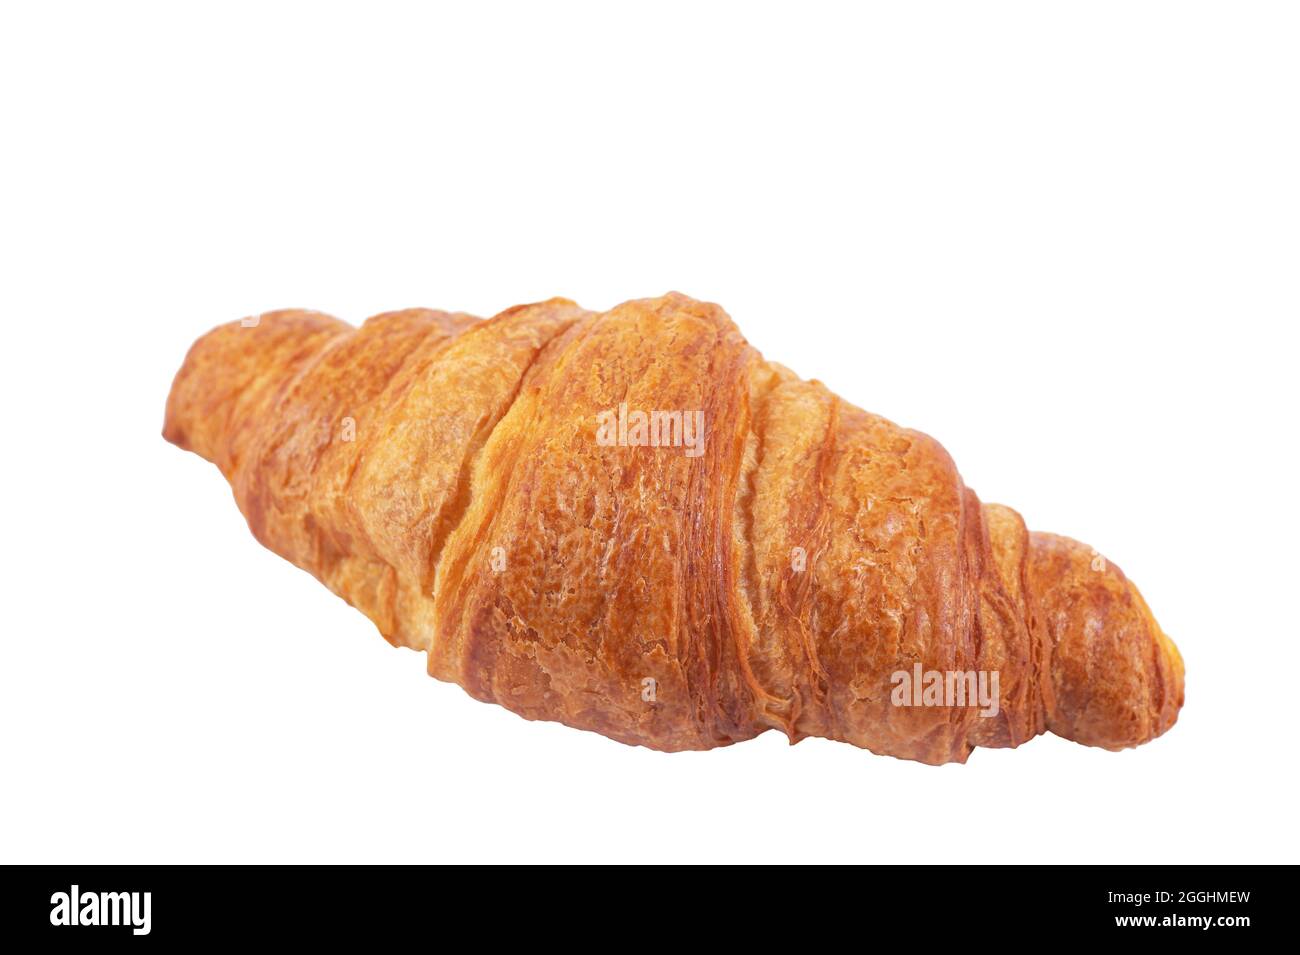 Freshly baked croissant isolated on white background. Stock Photo